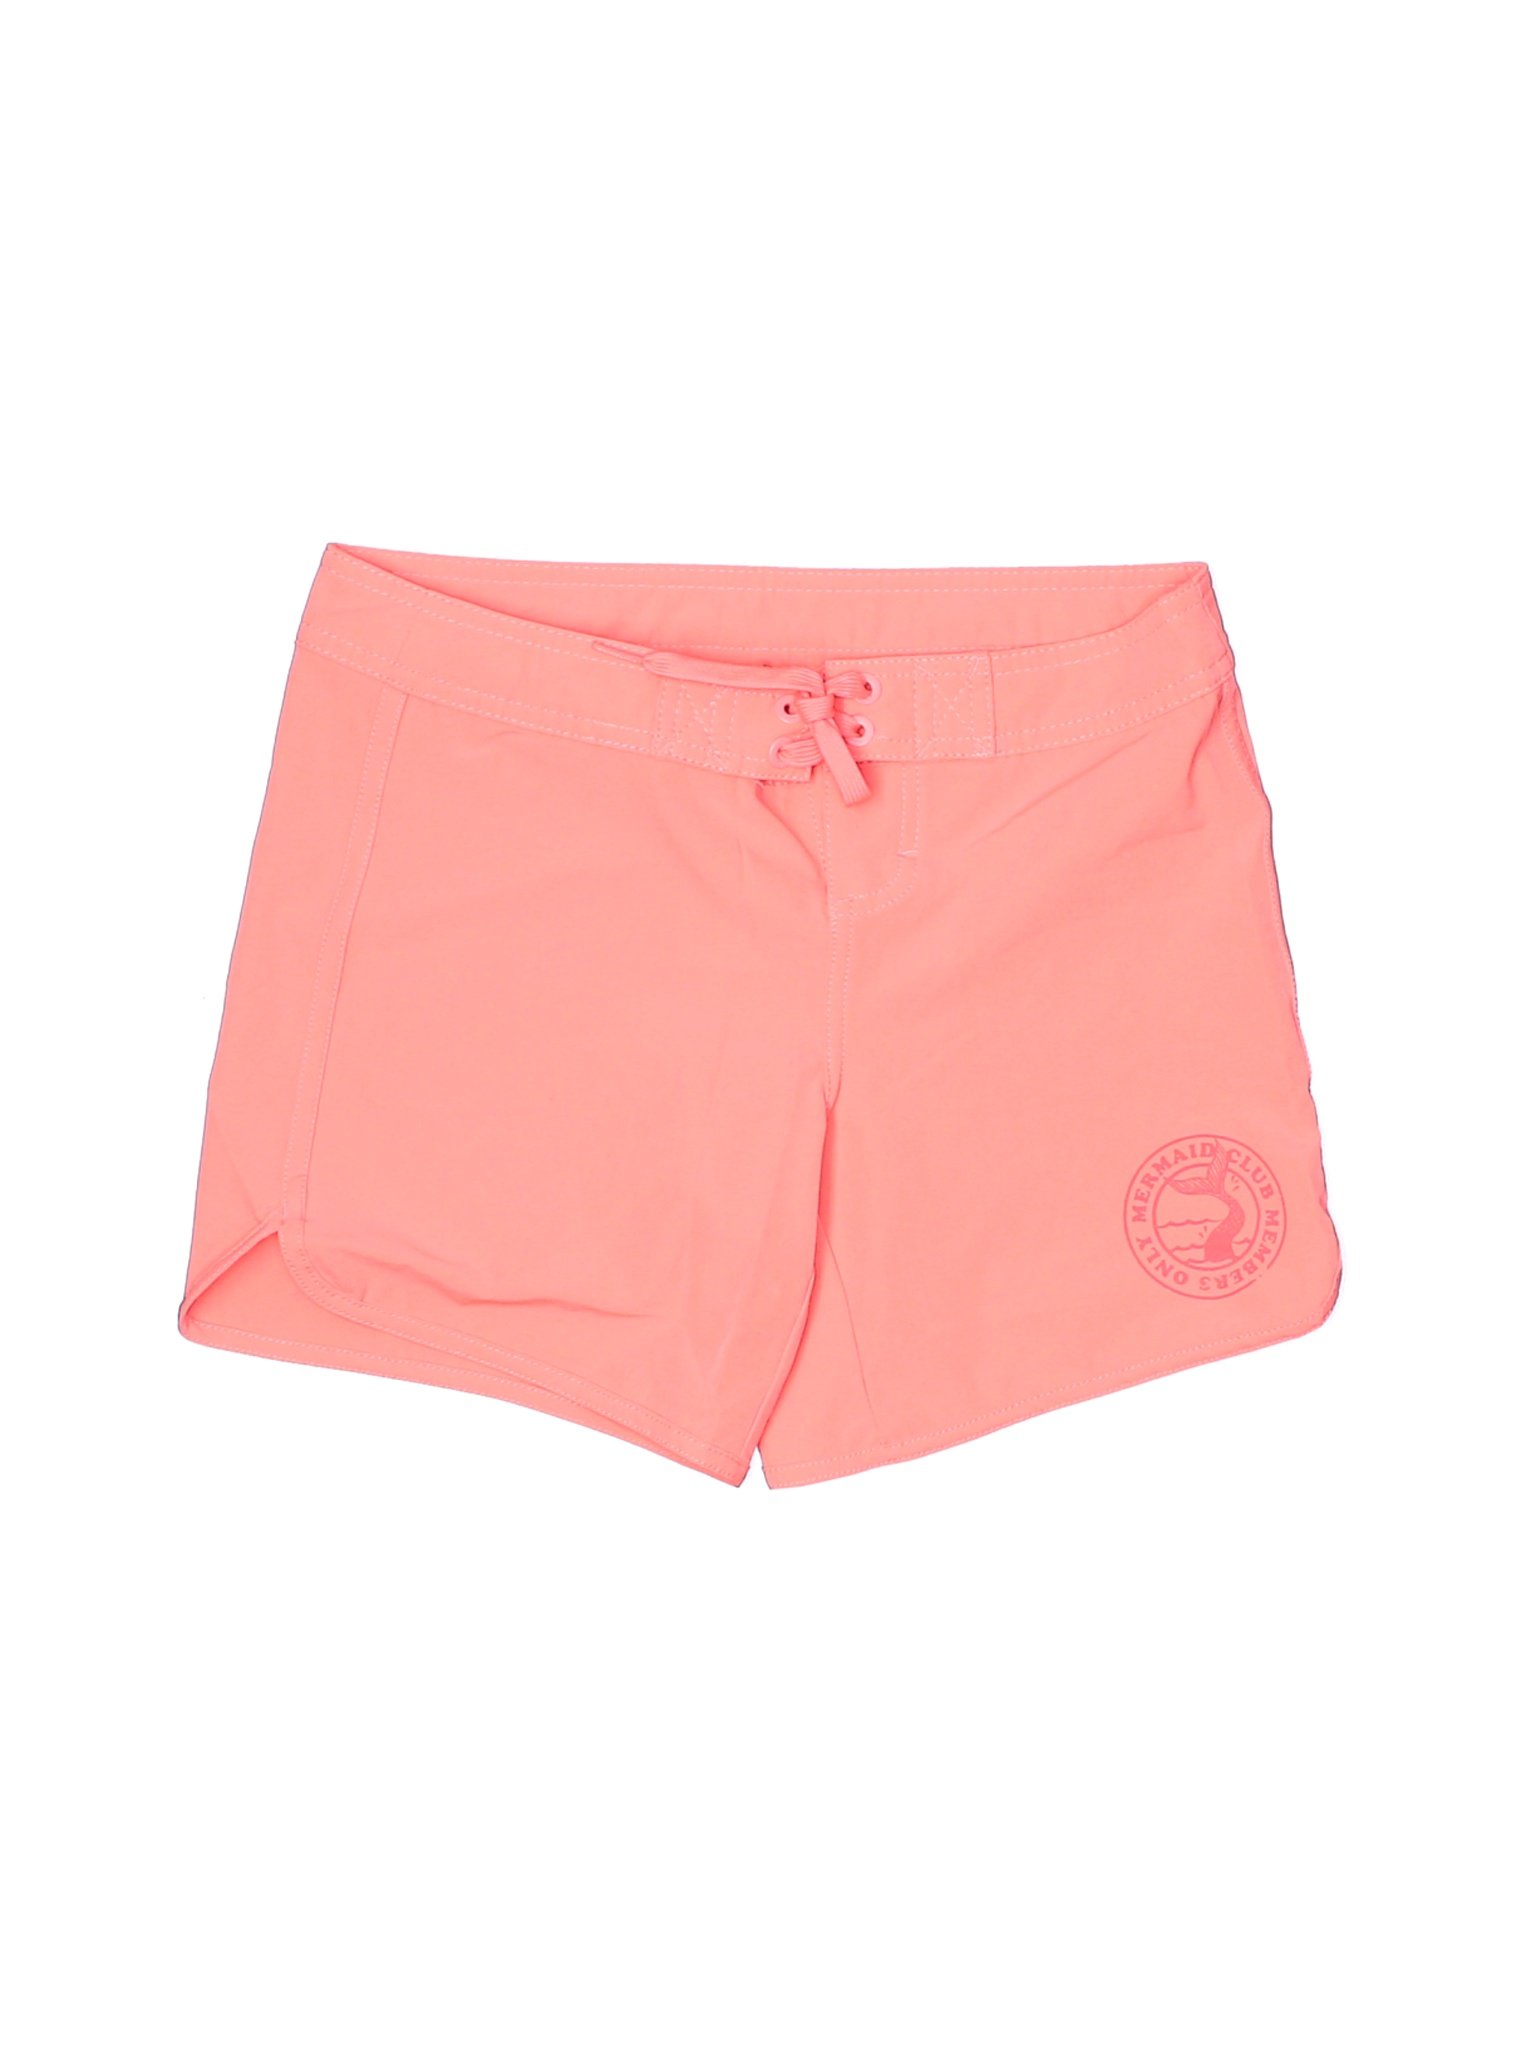 Billabong Girls Pink Board Shorts 12 | eBay